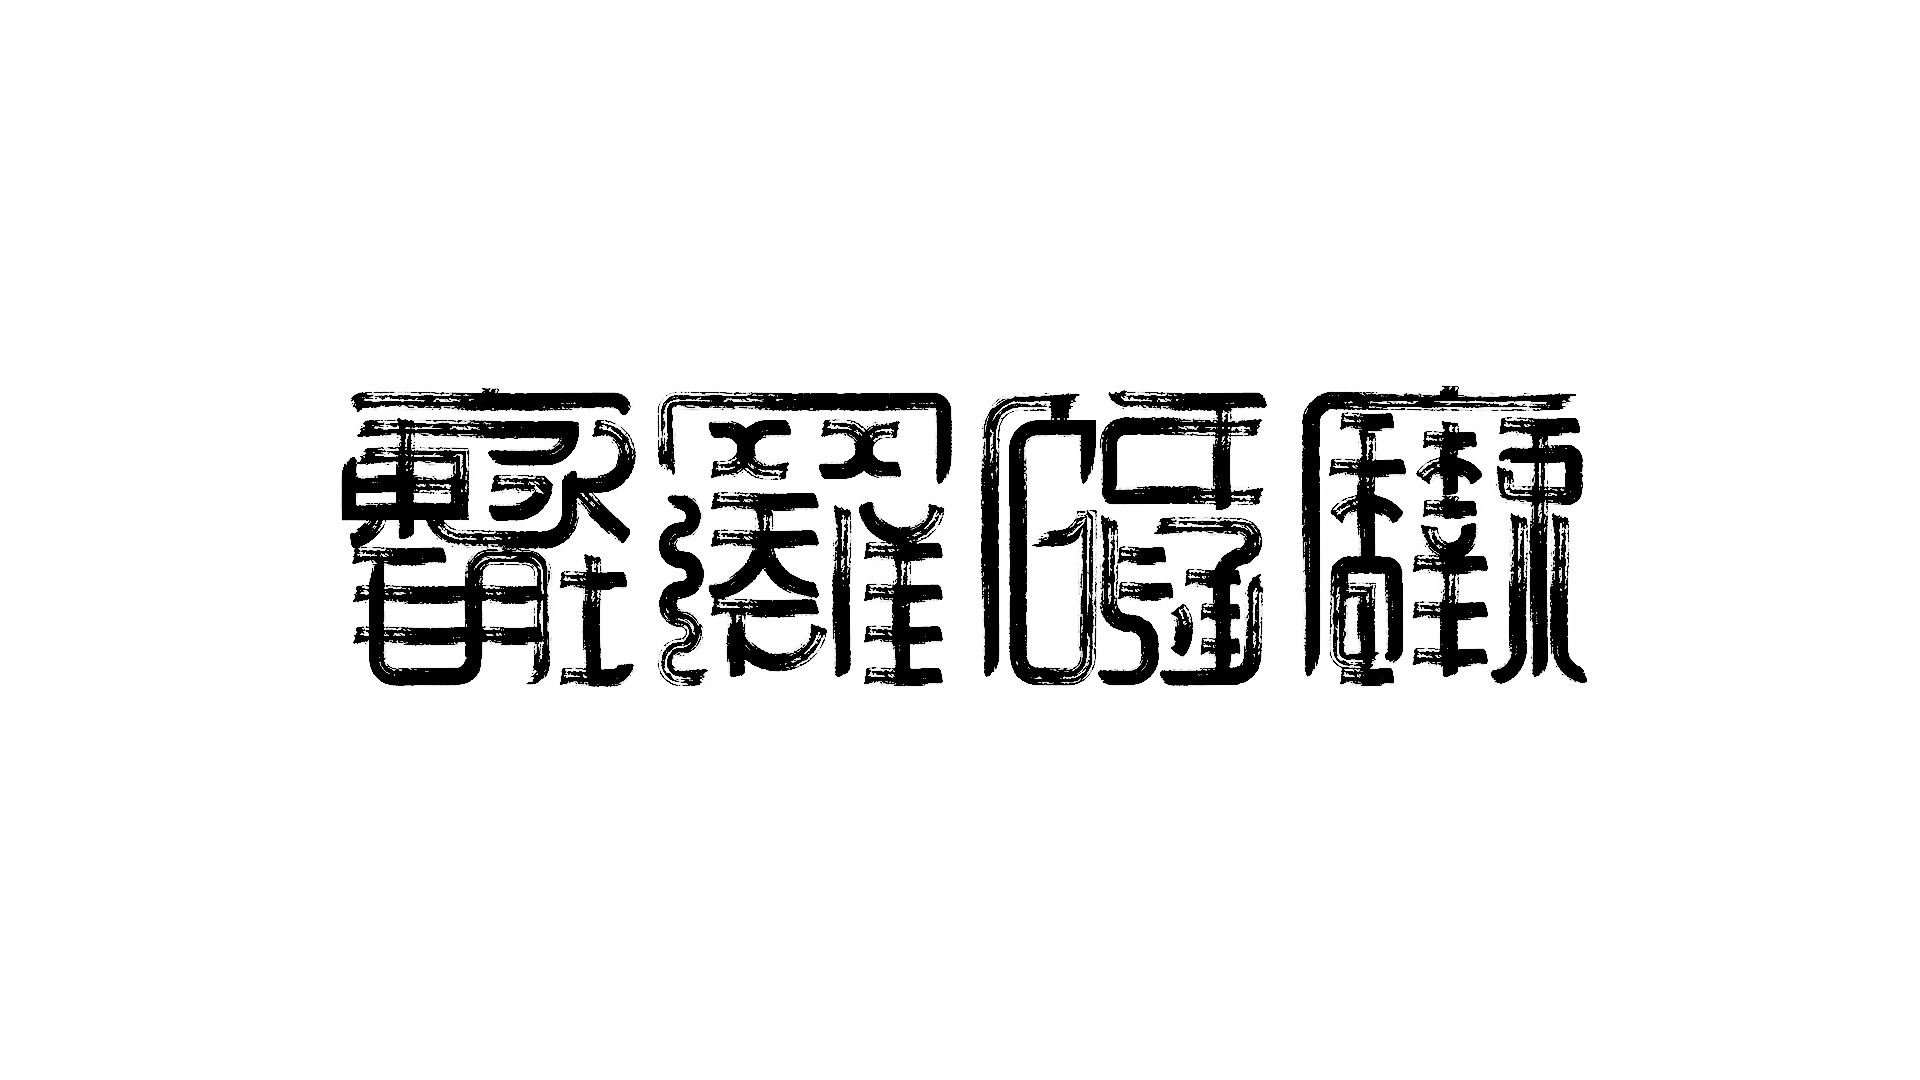 四_书法字体_字体设计作品-中国字体设计网_ziti.cndesign.com